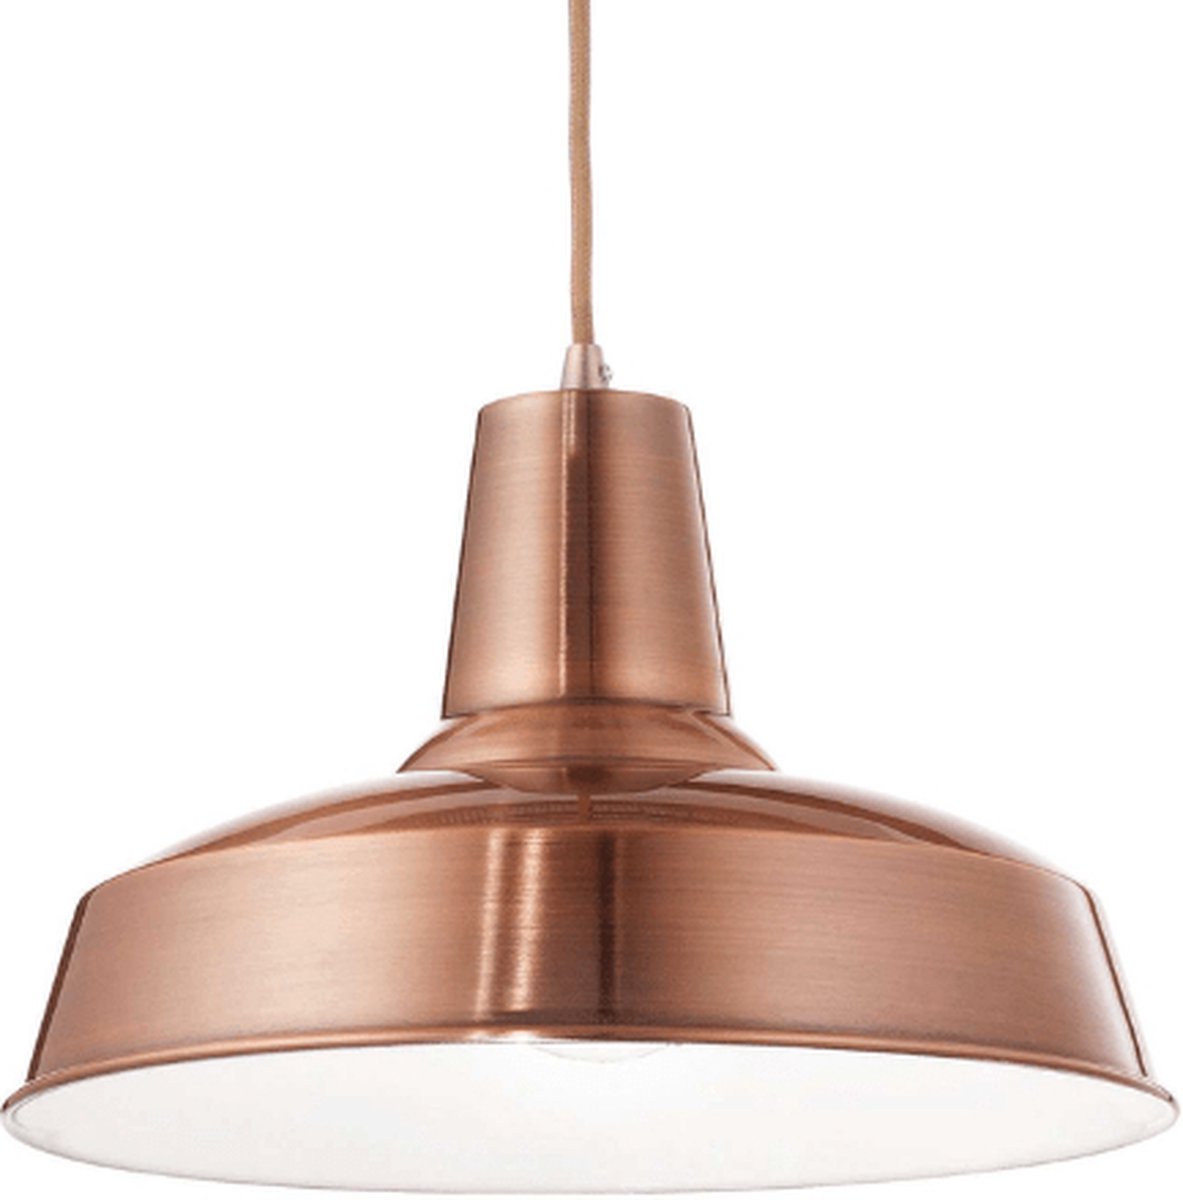 Ideal Lux - Moby - Hanglamp - Metaal - E27 - Koper - Voor binnen - Lampen - Woonkamer - Eetkamer - Keuken